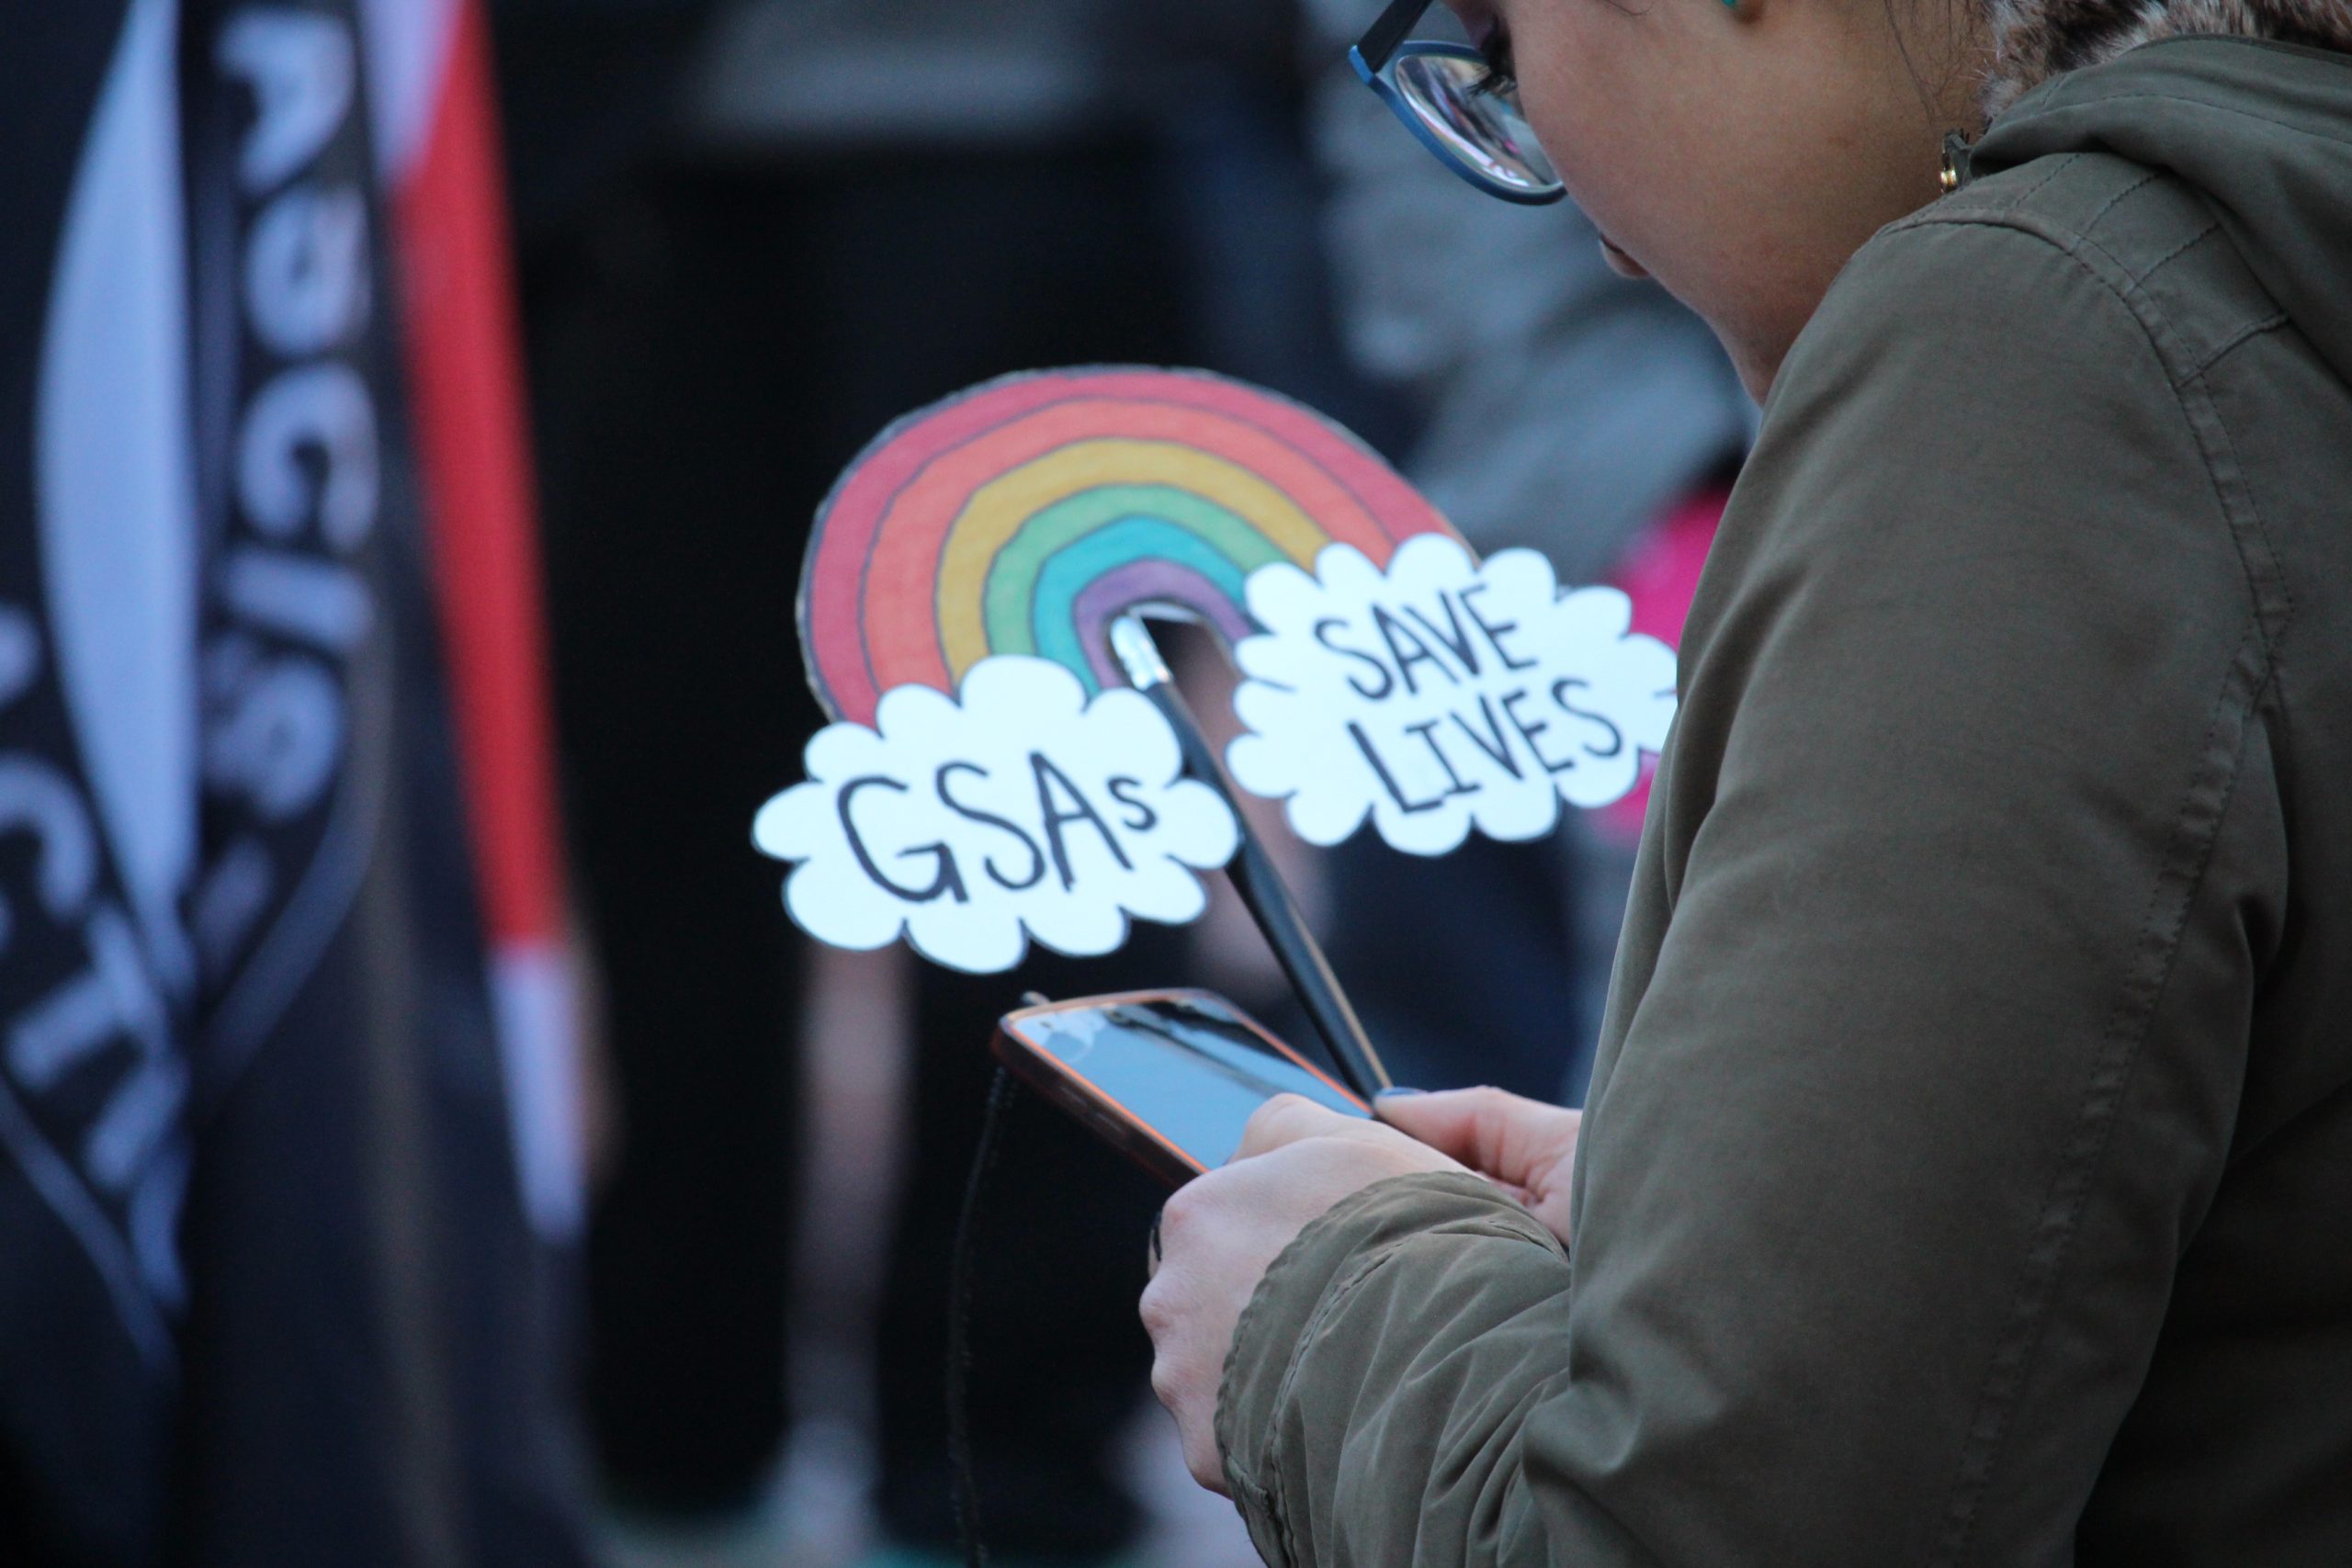 A rainbow sign says "GSAs SAVE LIVES."